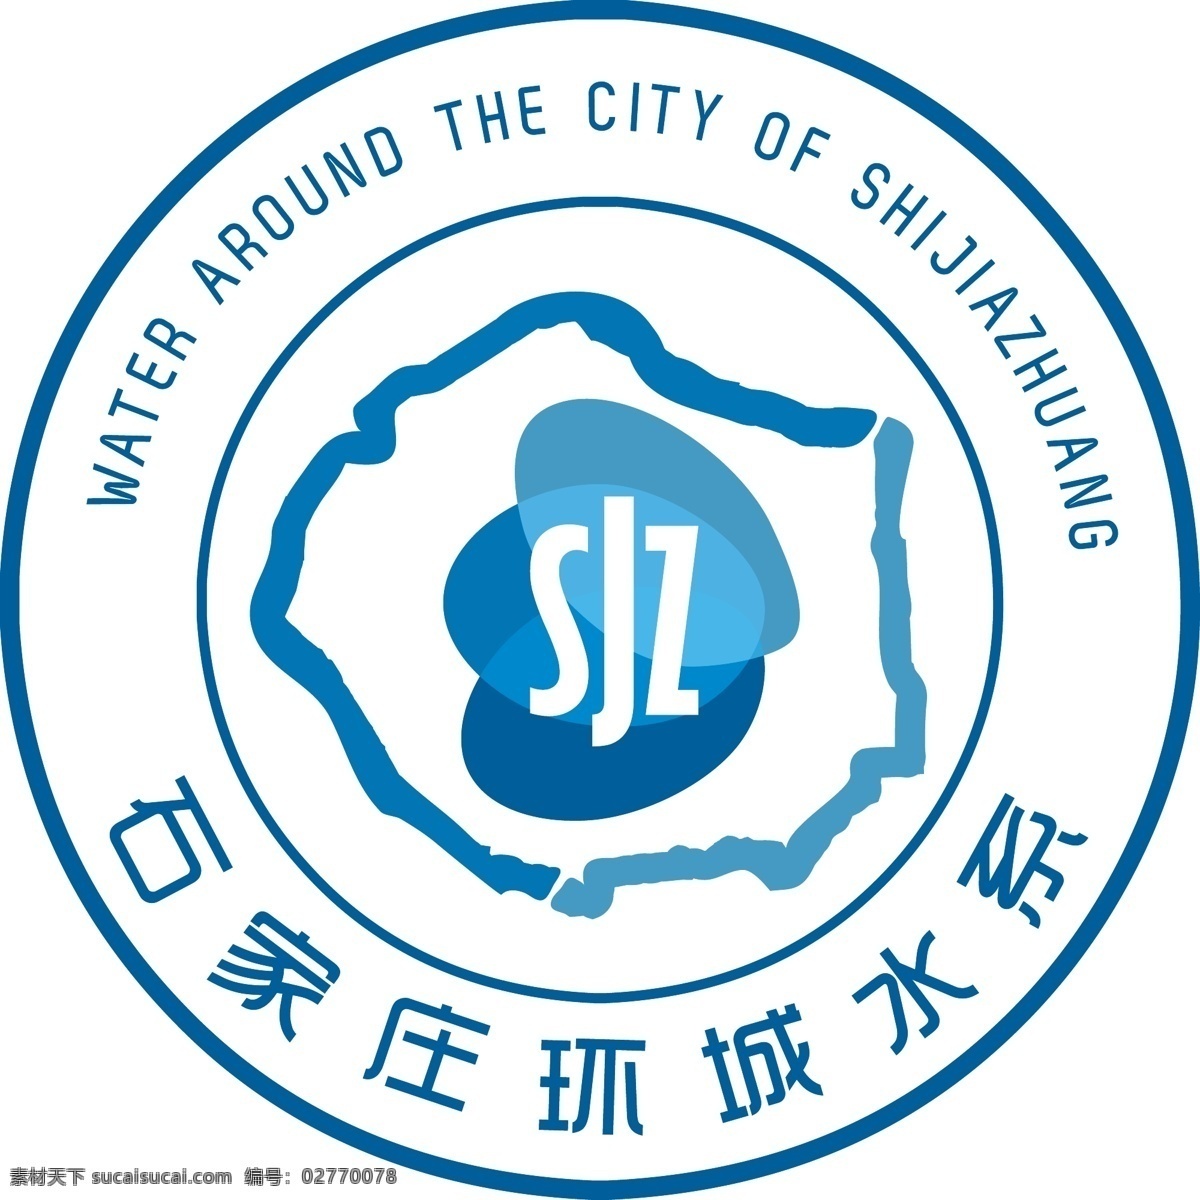 石家庄 环城 水系 logo 环城水系 公园 蓝色 水 标志图标 企业 标志